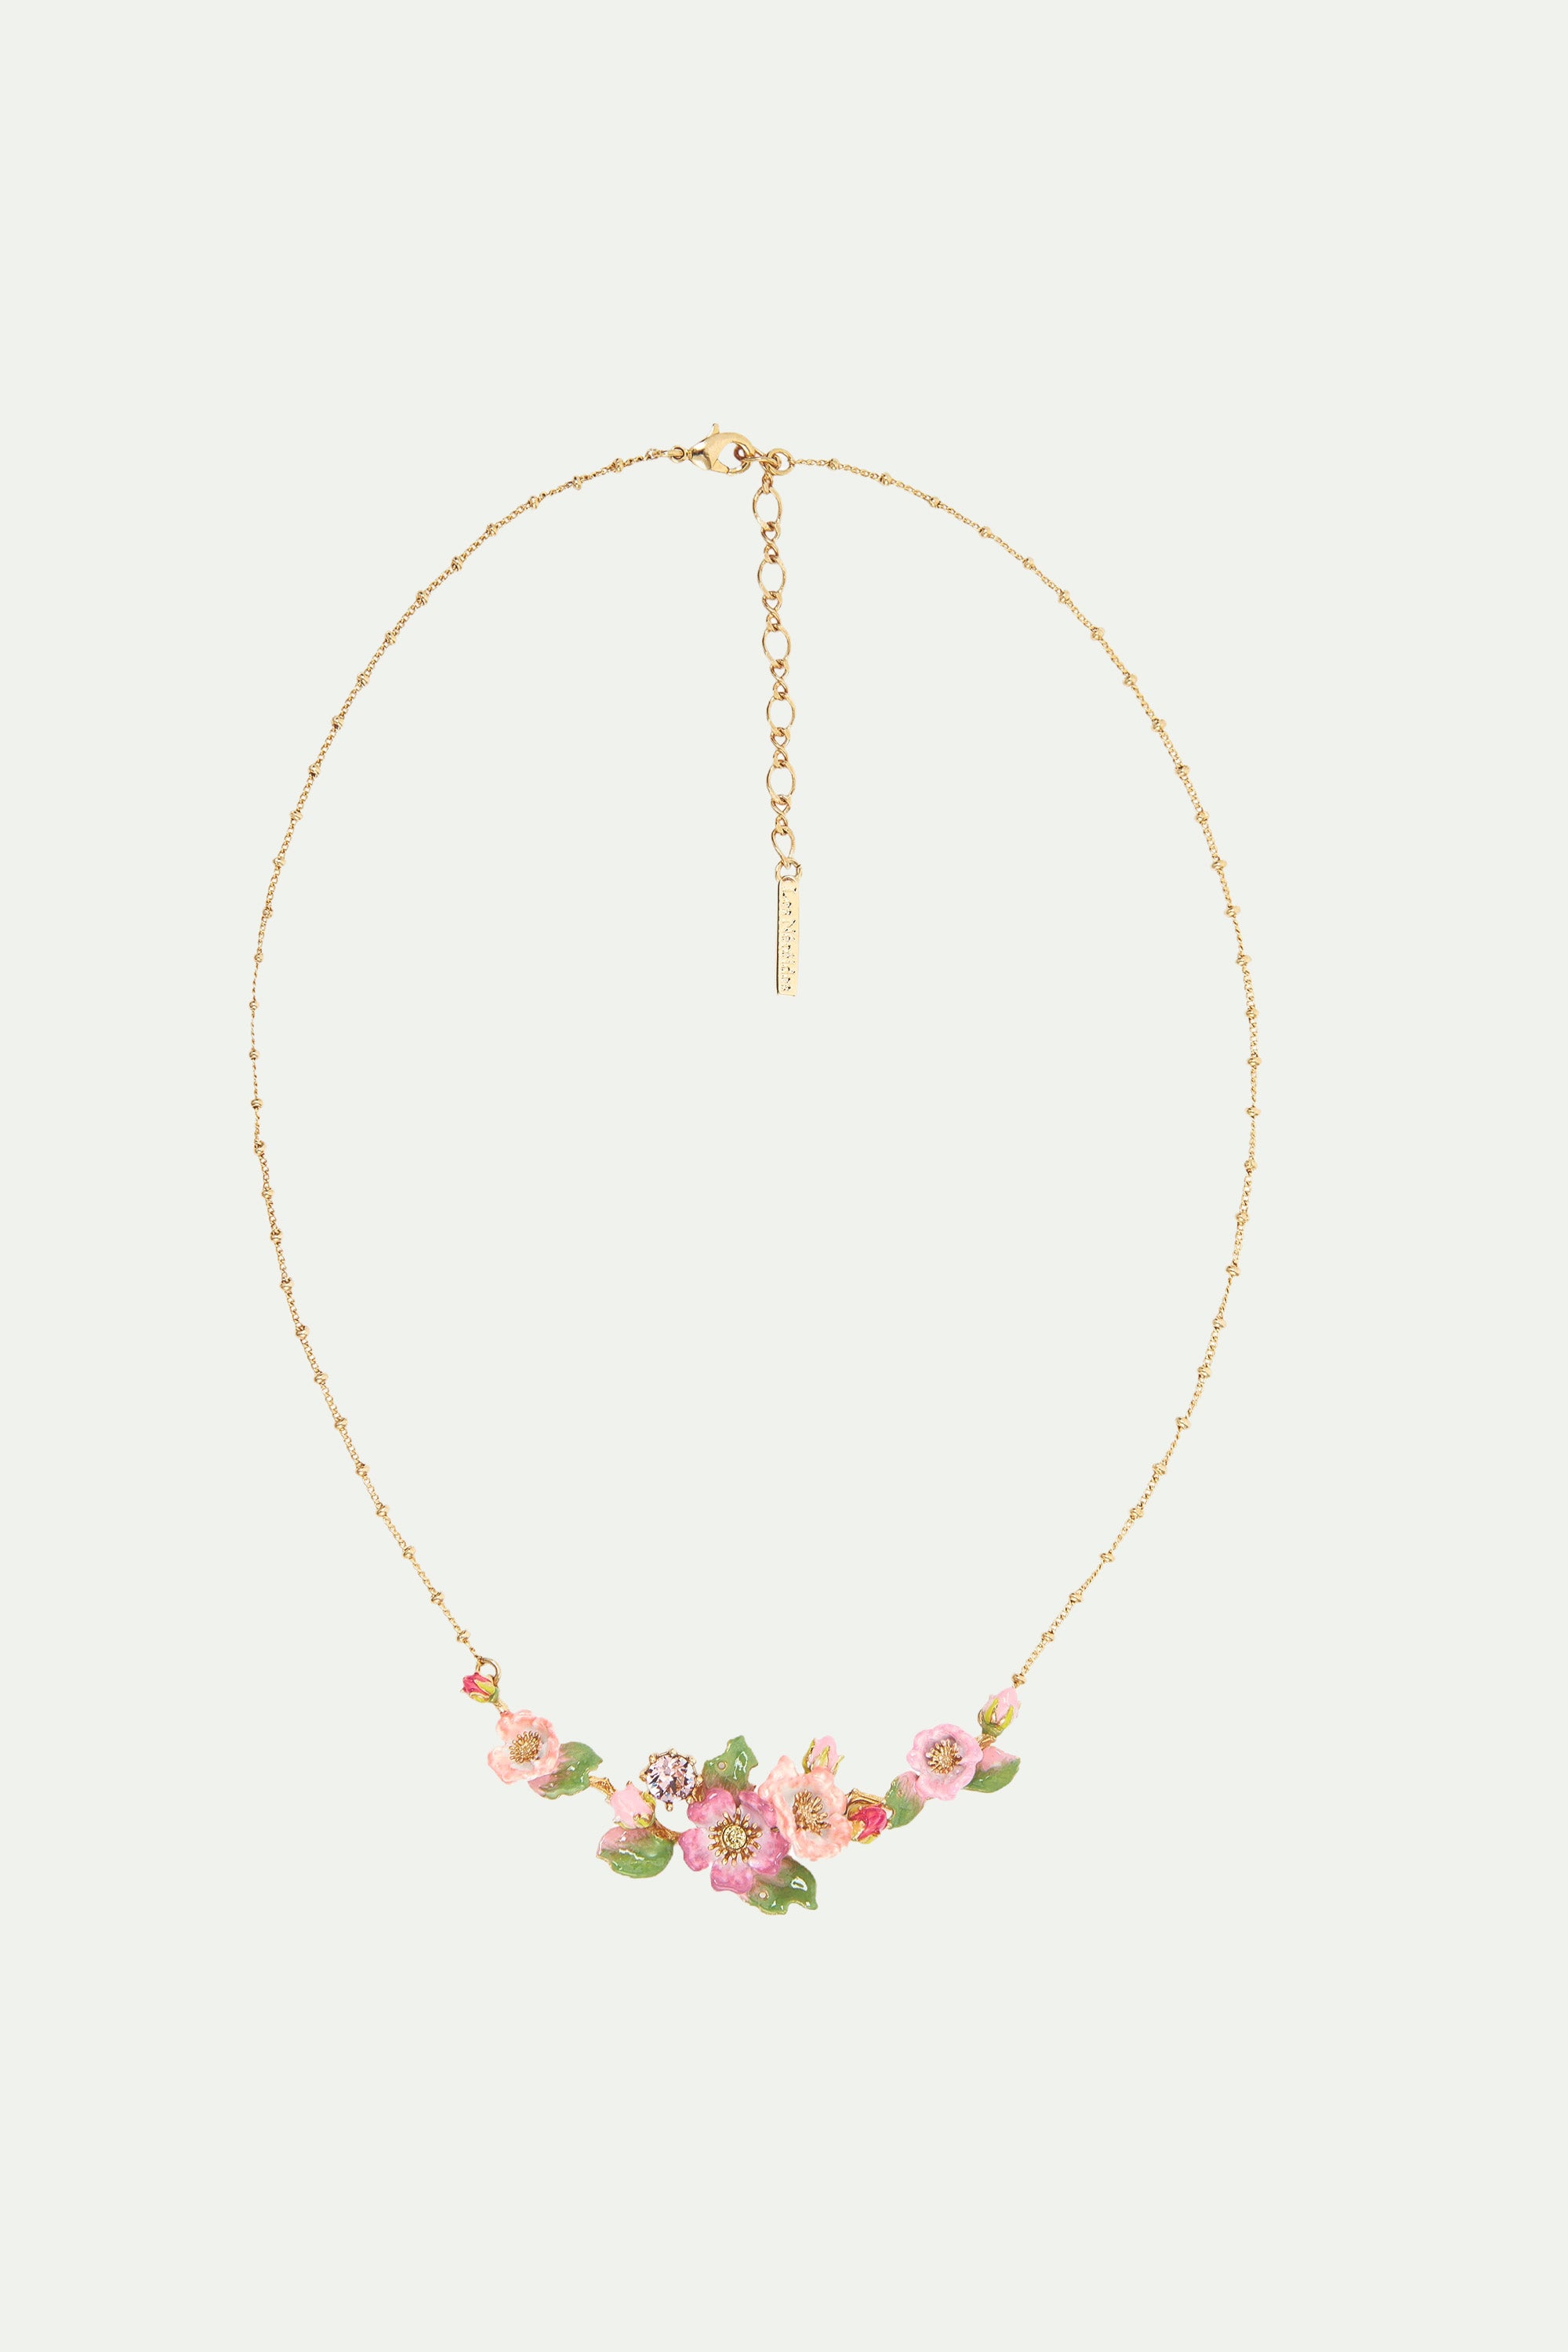 Wild rose and rosebush leaf statement necklace